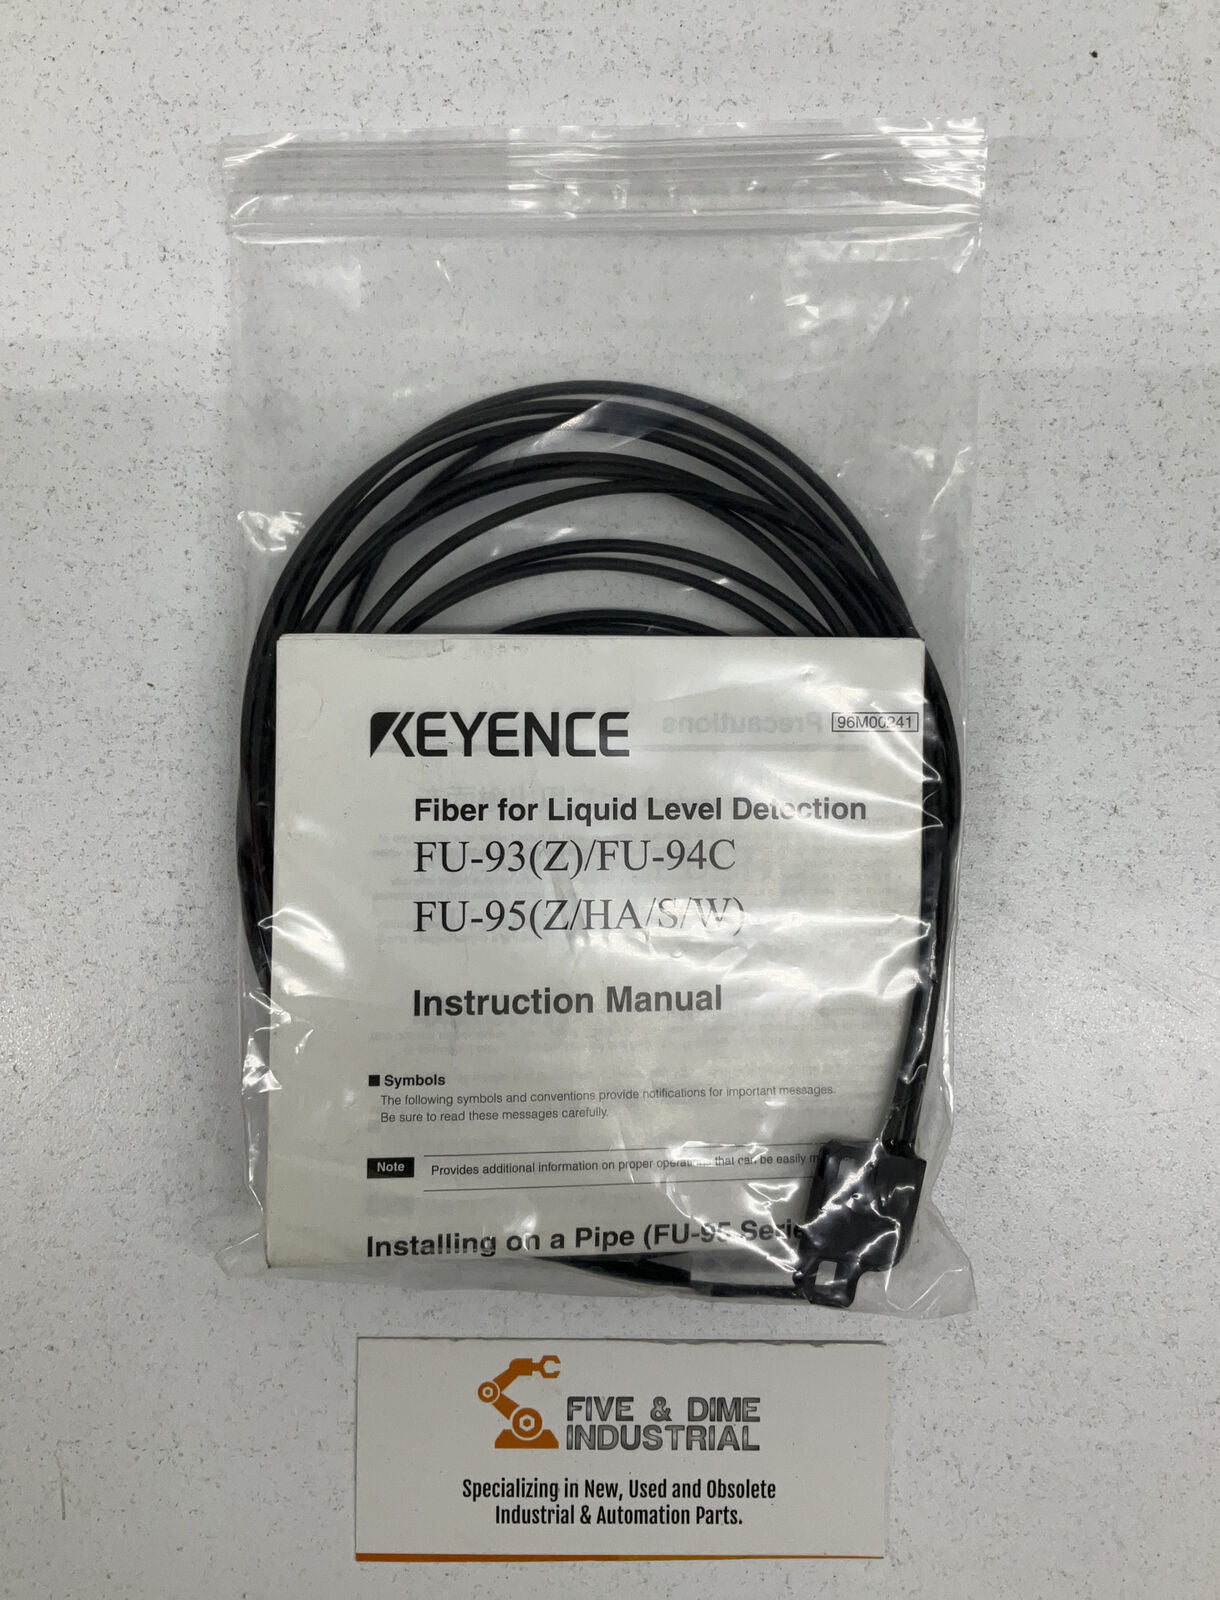 Keyence FU-95W New Fiber Optic Sensors for Liquid Detection Sensor Only (YE117)